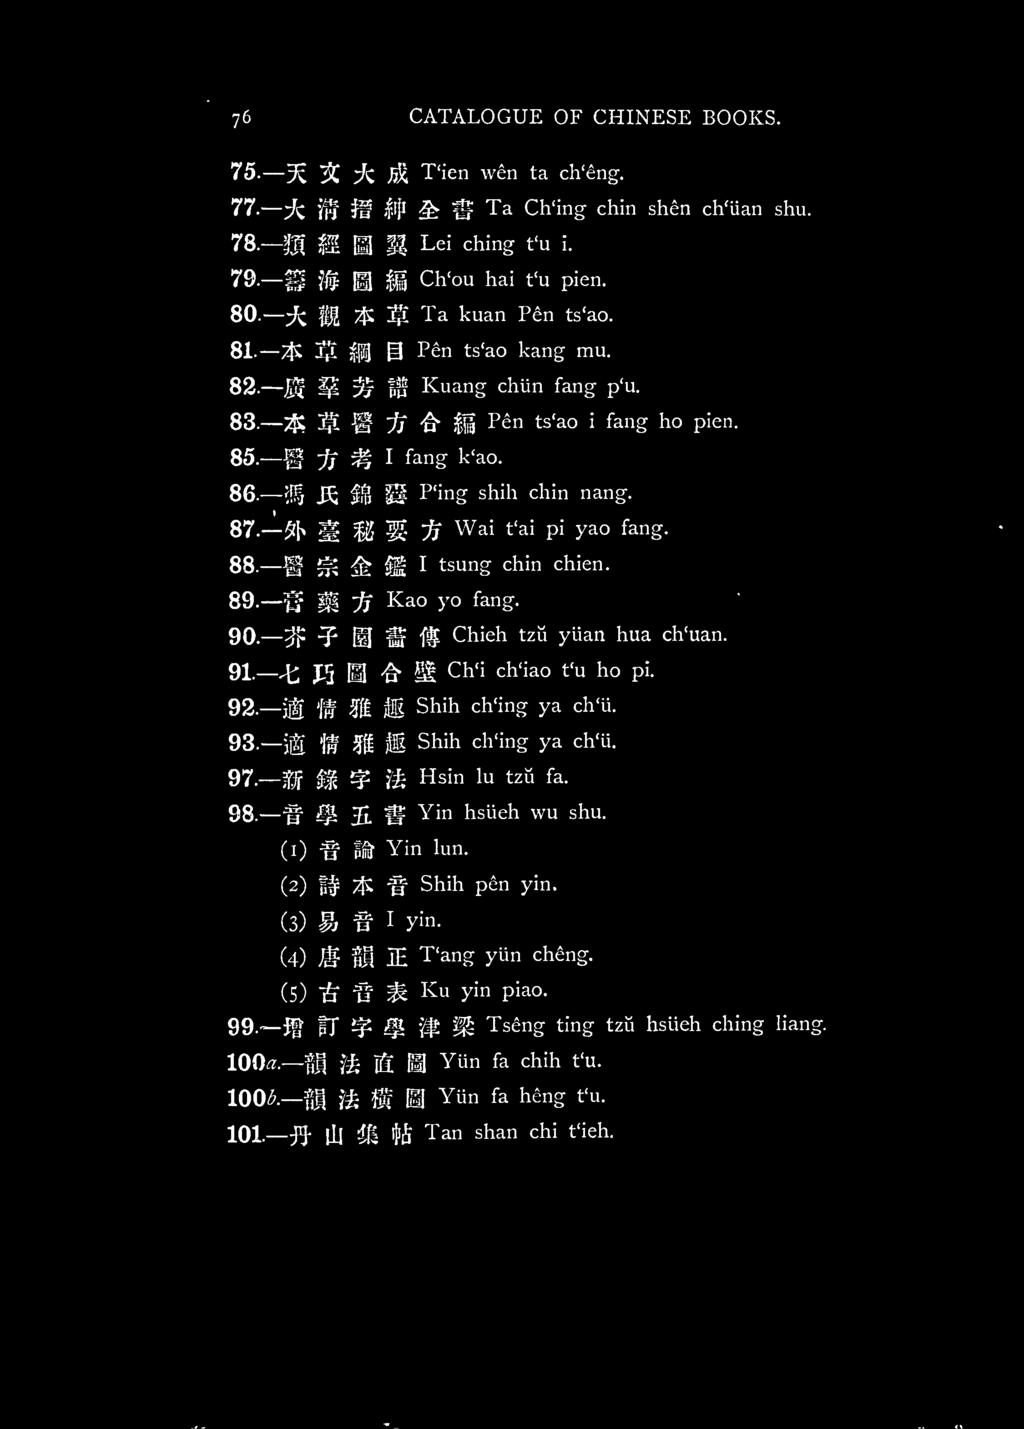 '^] ^ i^ M P'ing shih chin nang. 87. ^h ^ M^ if Wai t'ai pi yao fang. 88. ^ ^ :^ ii I tsung chin chien. 89. ^ ^ -jf Kao yo fang. 90. ^? HI ^ f^ Chieh tzu yiian hua ch'uan. 91. t; J.